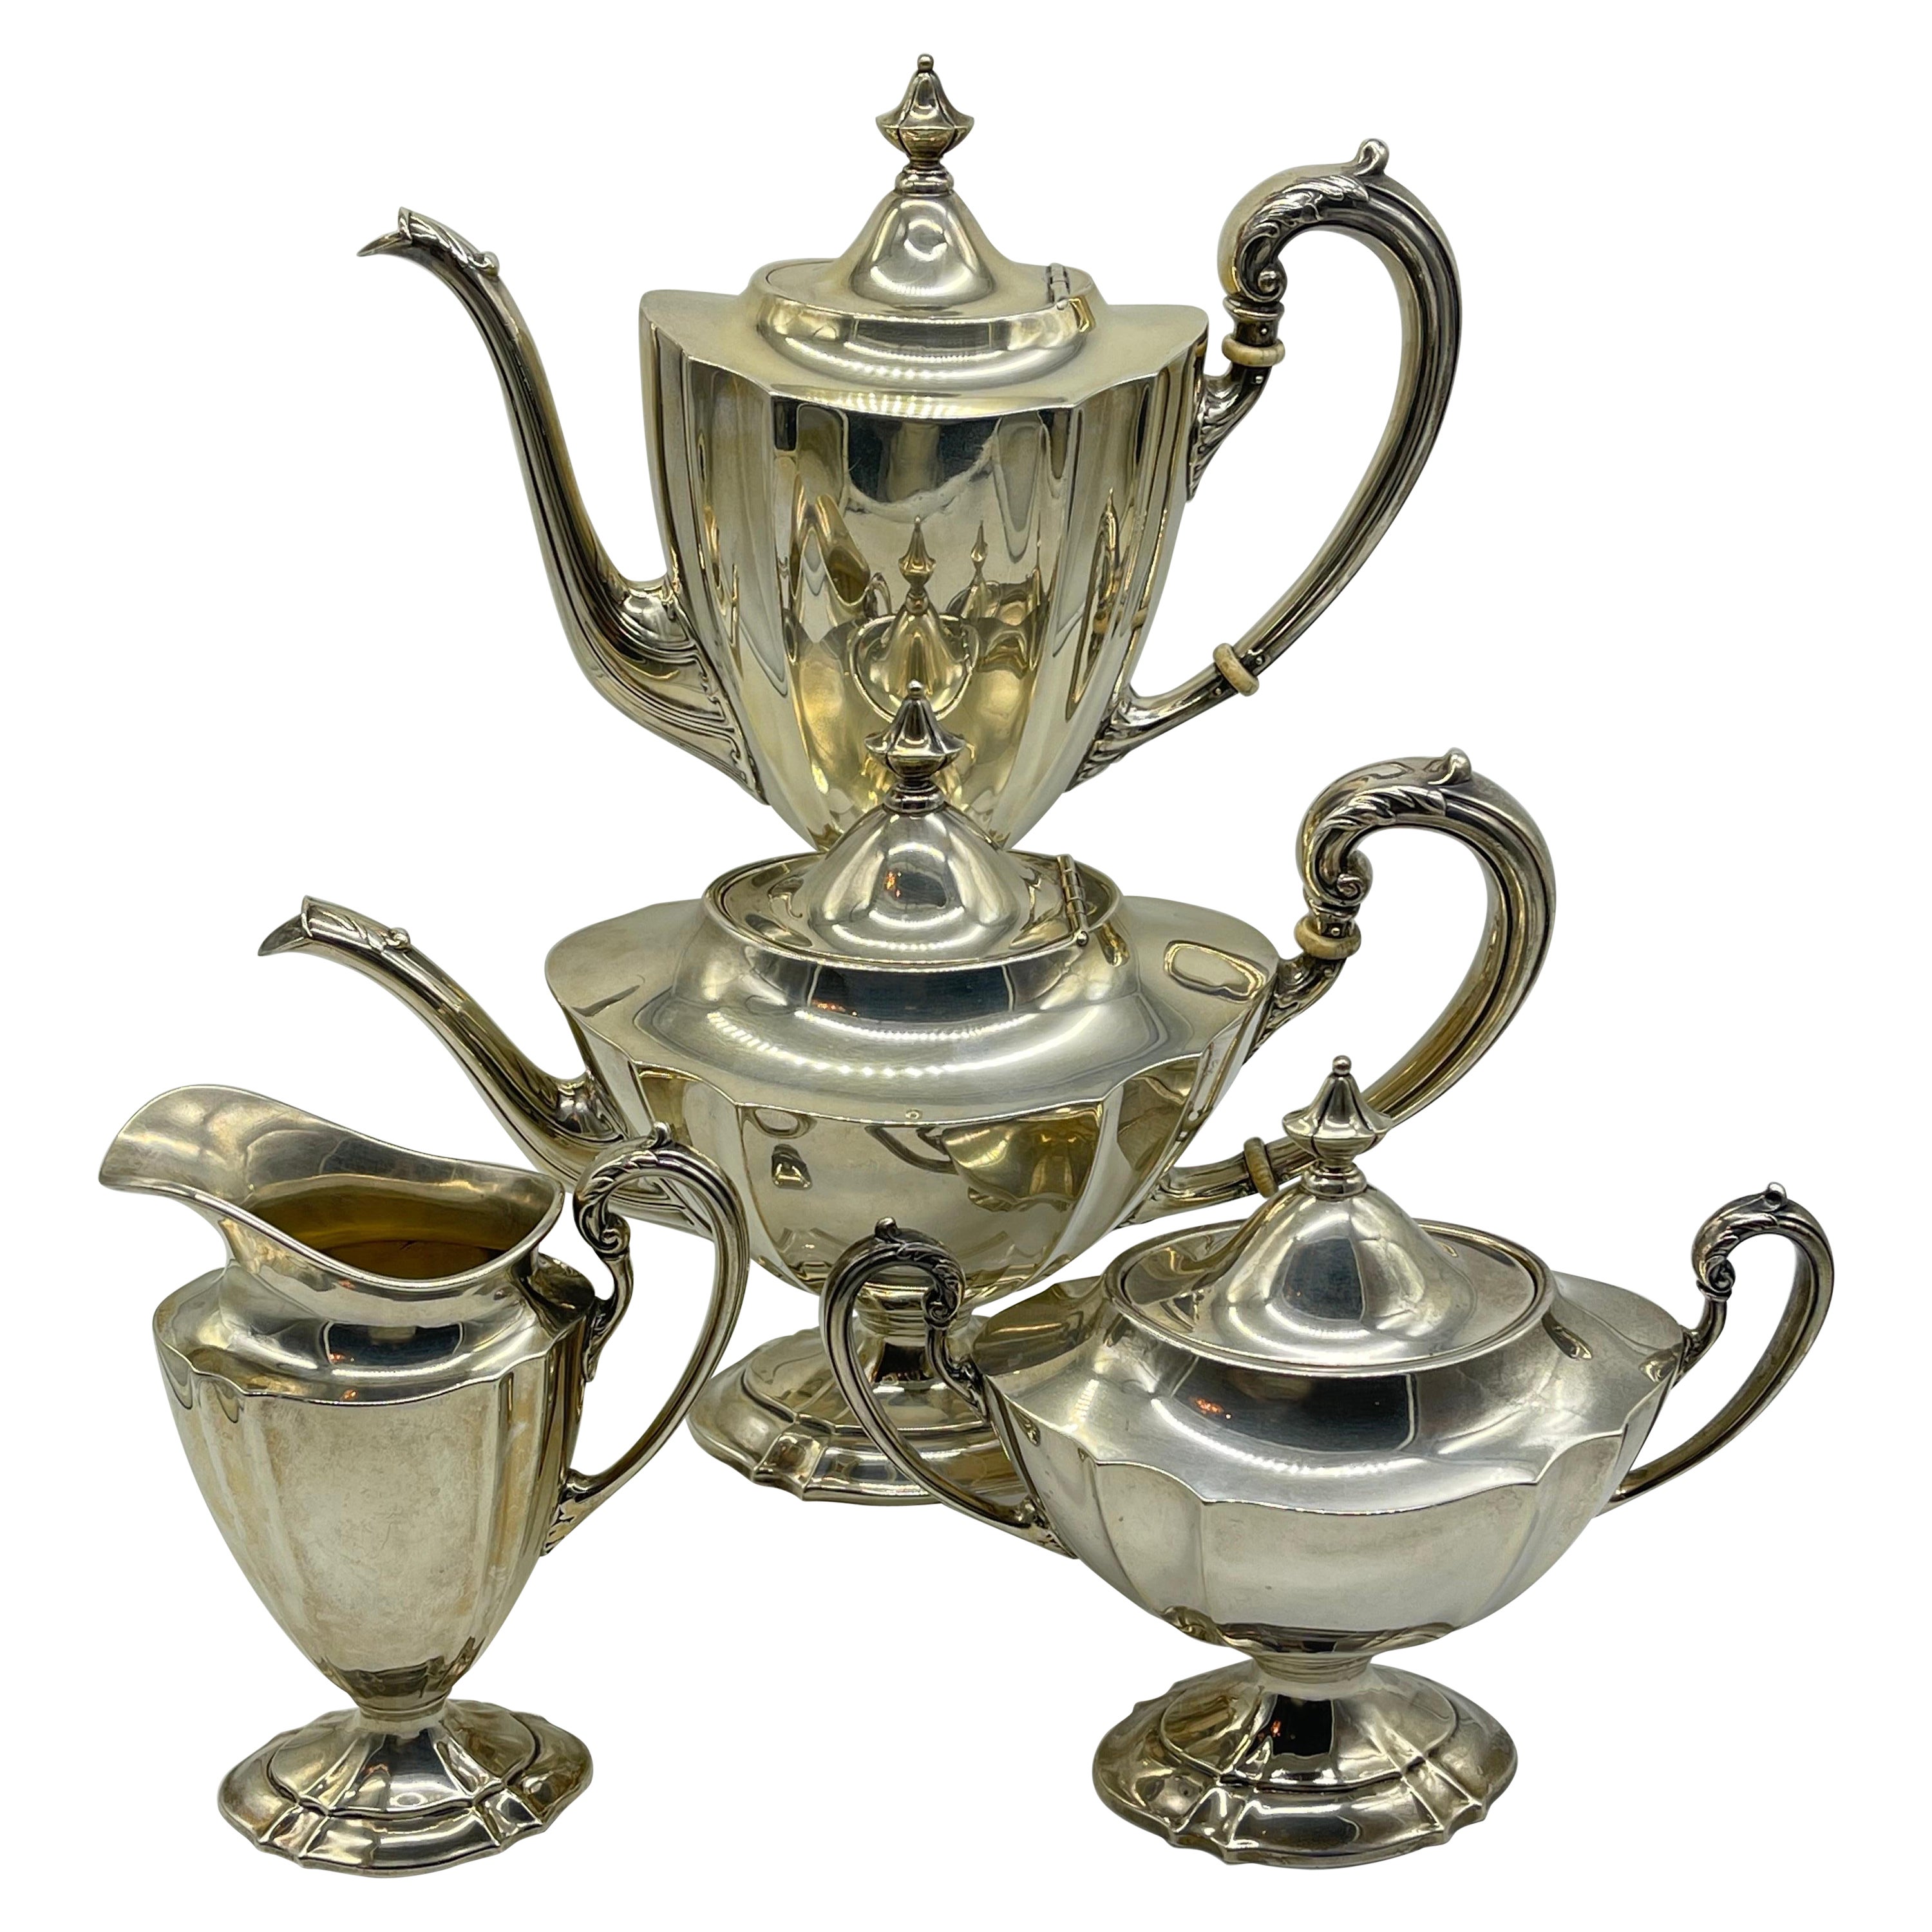 Antiker Tafelaufsatz aus Silber mit Kaffee- und Teekanne, Klassizismus / Empire, internationales Sterling